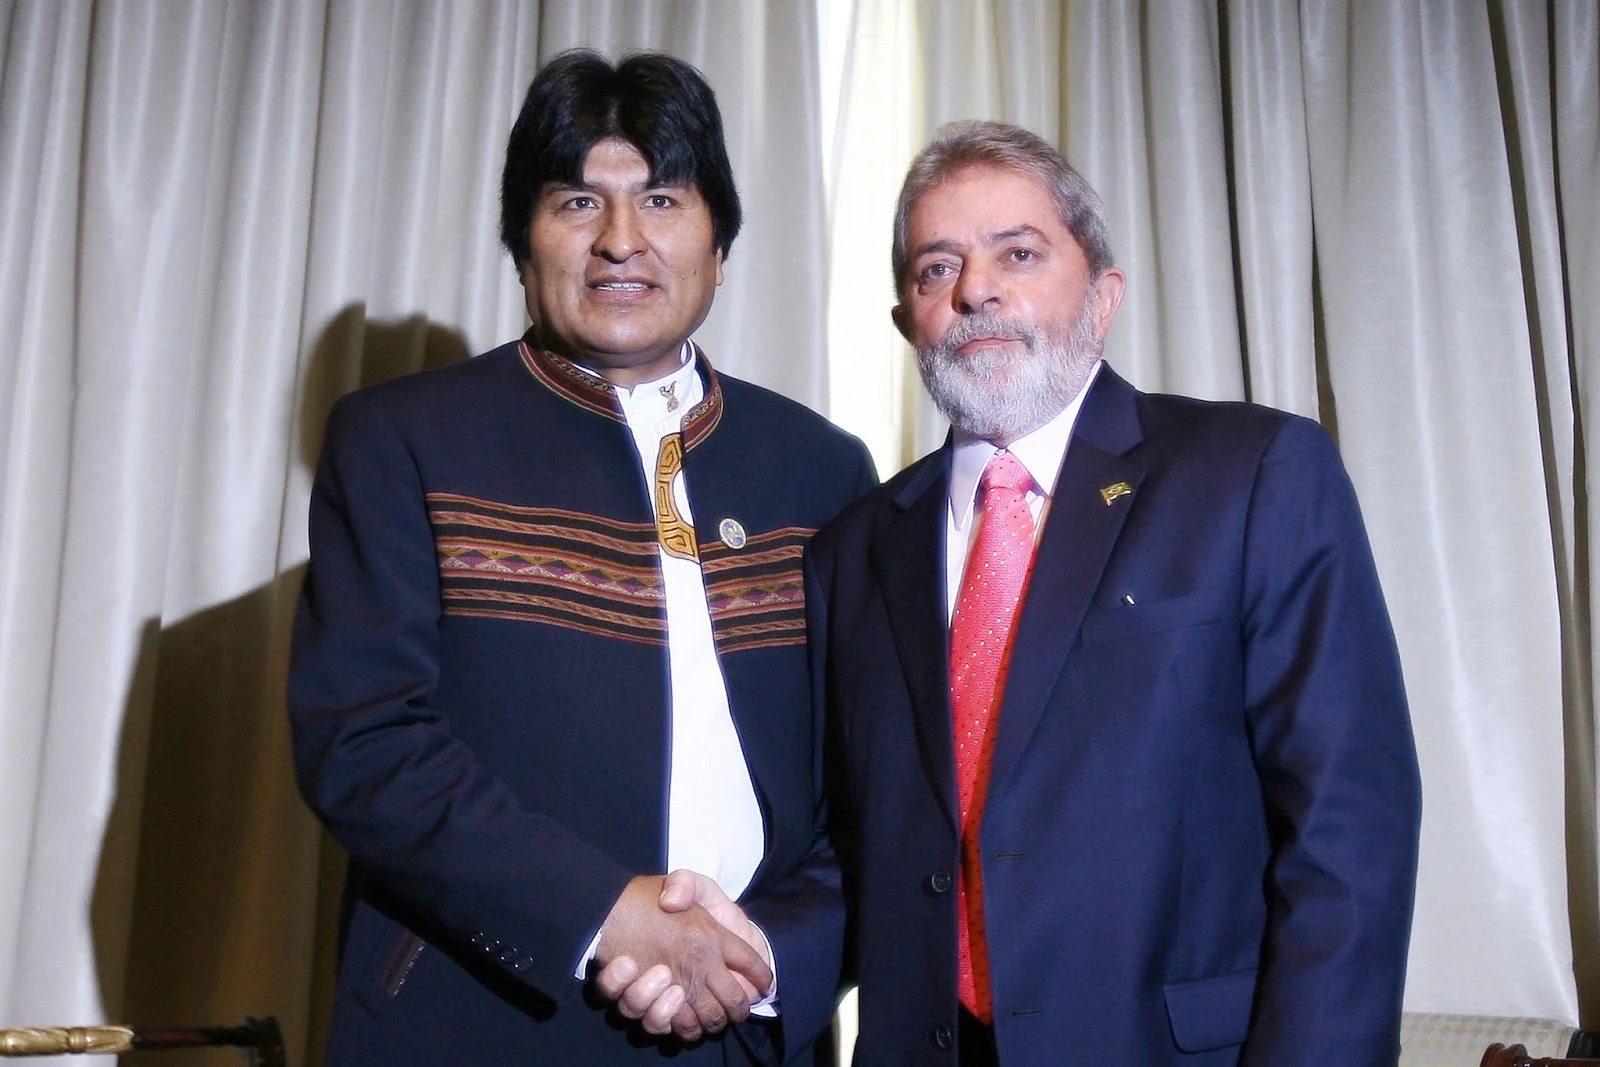 Evo Morales e Lula 